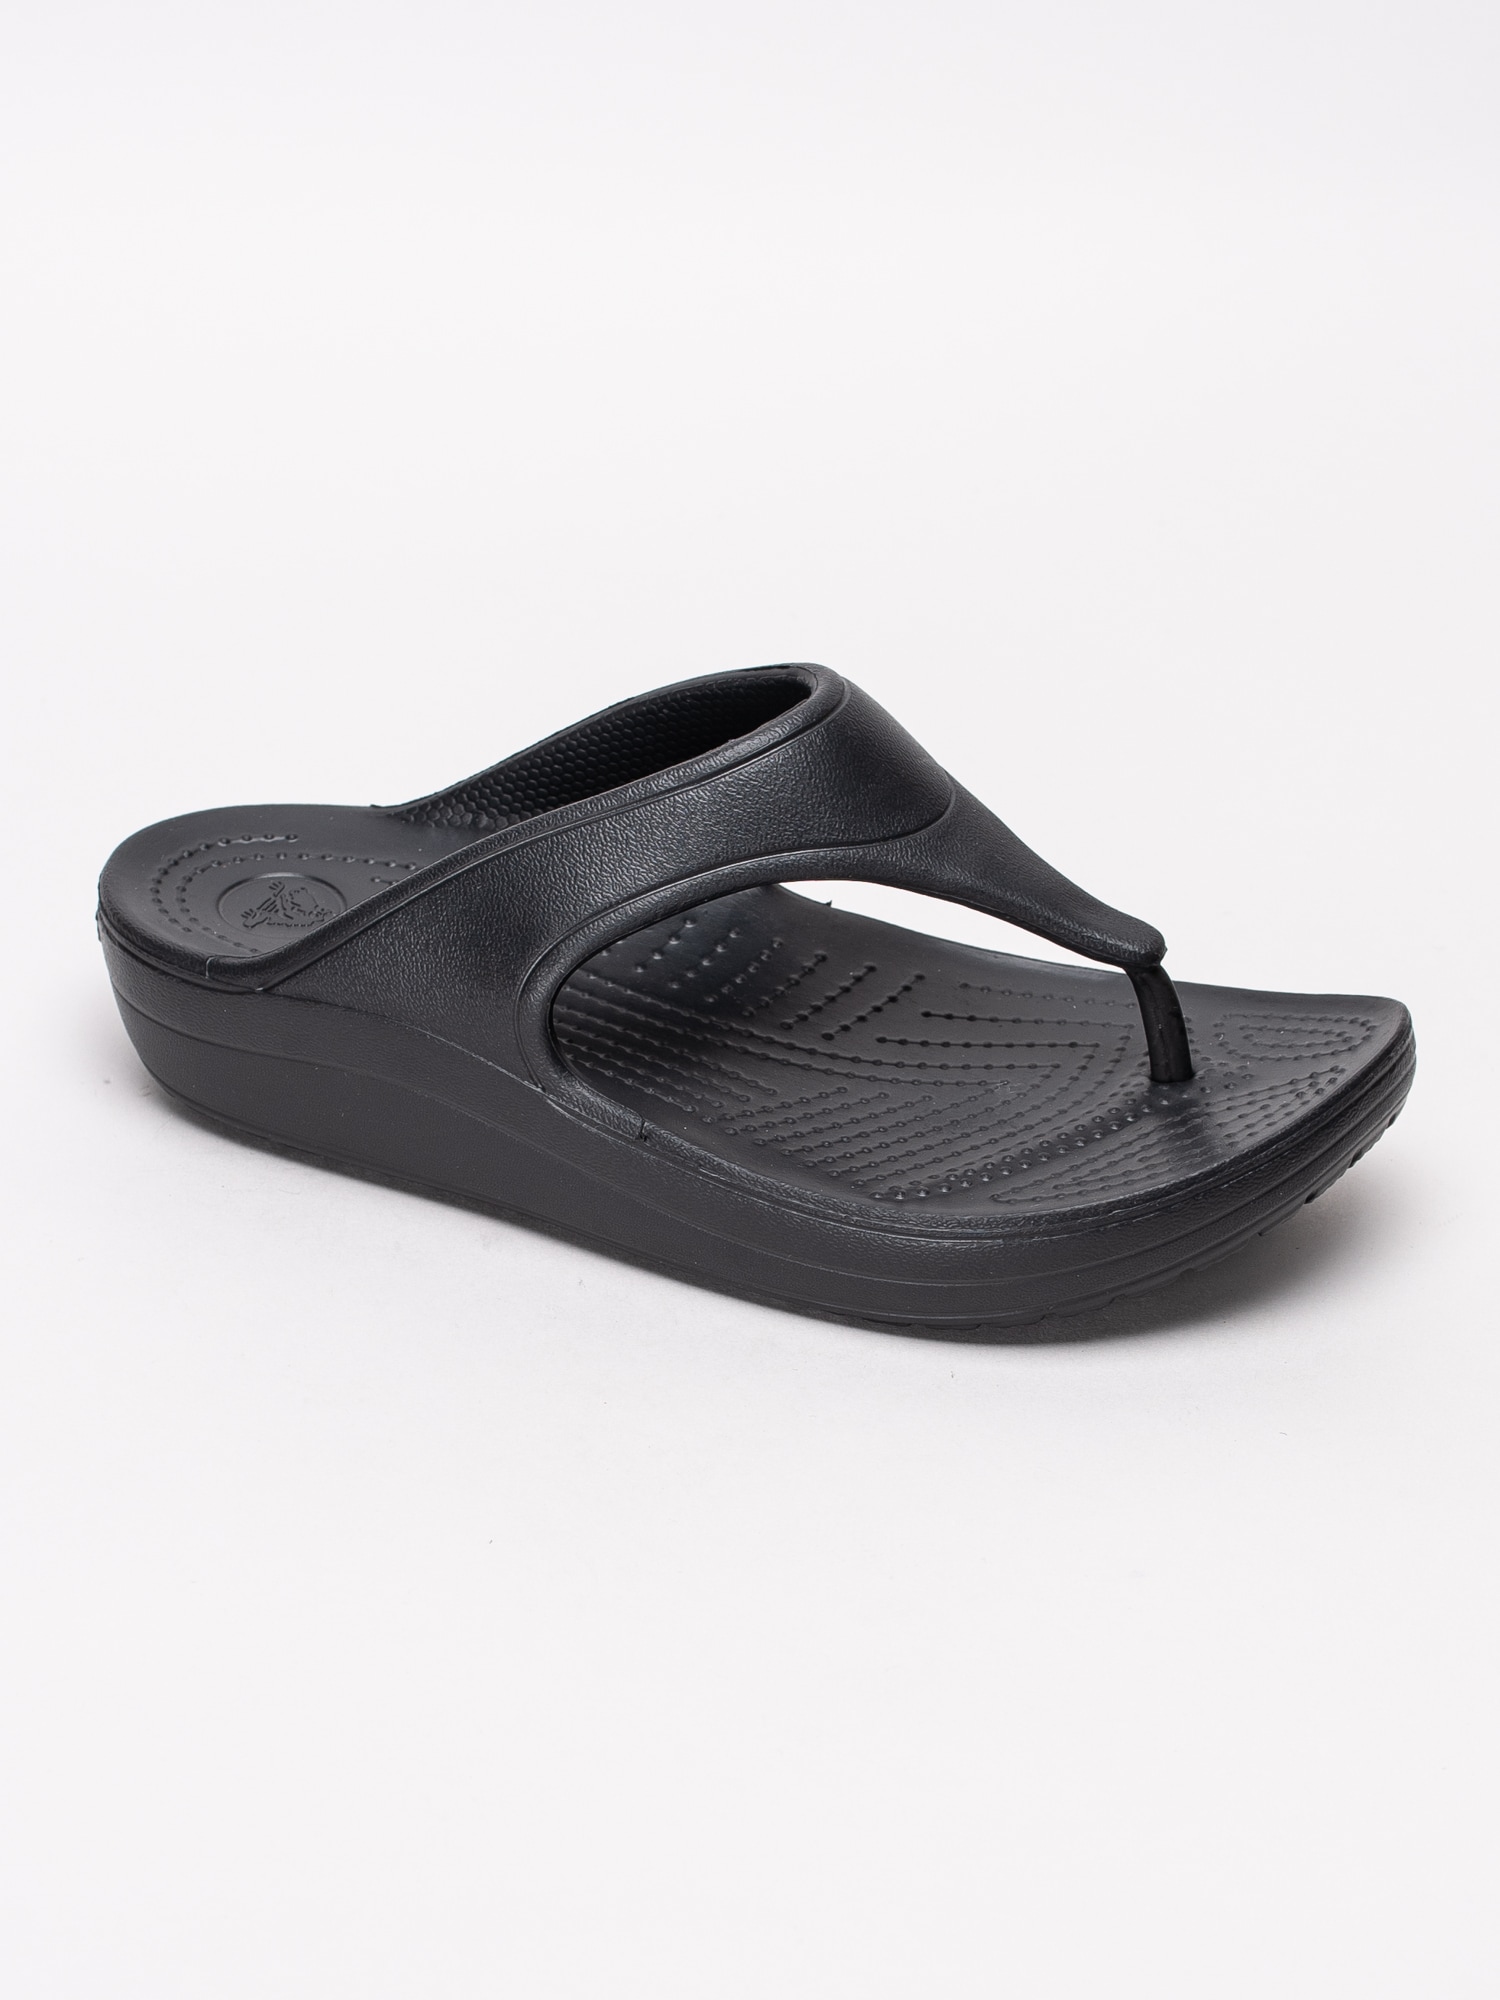 65191019 Crocs Sloane Platform Flip W 200486-001 svarta flipflops sandaler med kilklack-1